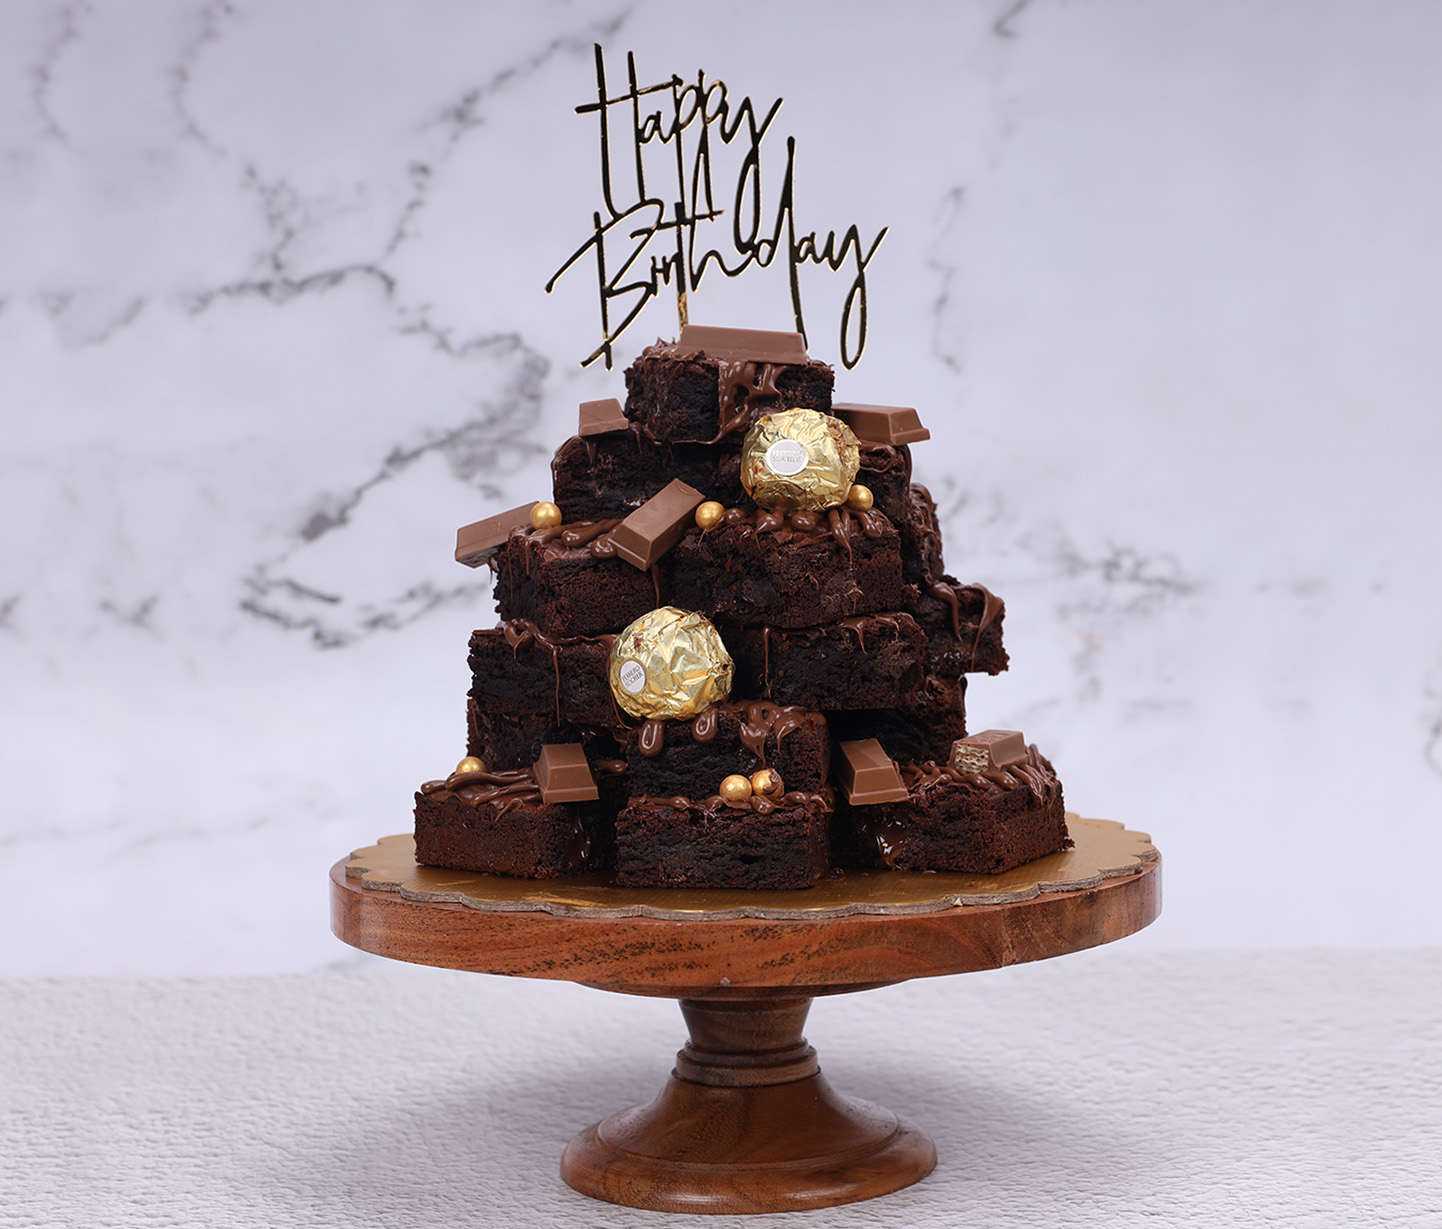 Vegan Chocolate Brownie Cake Recipe | Planted365